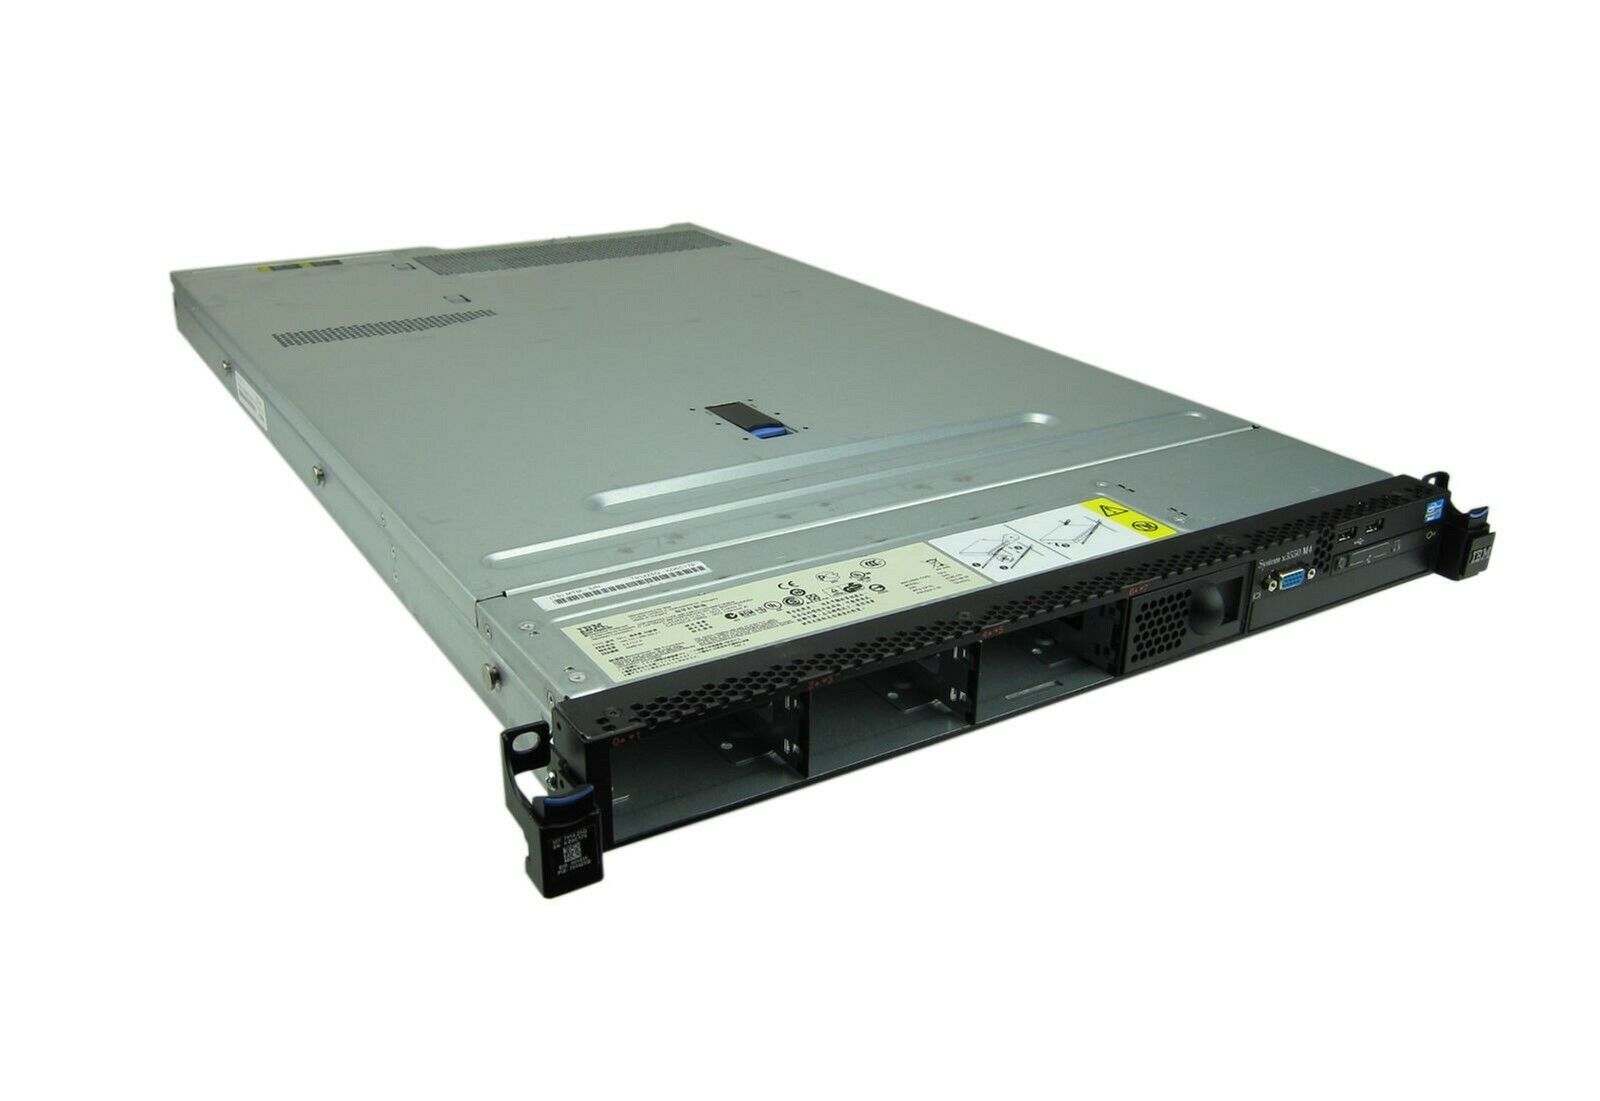 IBM 7042-CR8 HMC 1x E5-2640V2 2.0GHz 16GB RAM No HDD's, 2x PSU's, Rail Kit